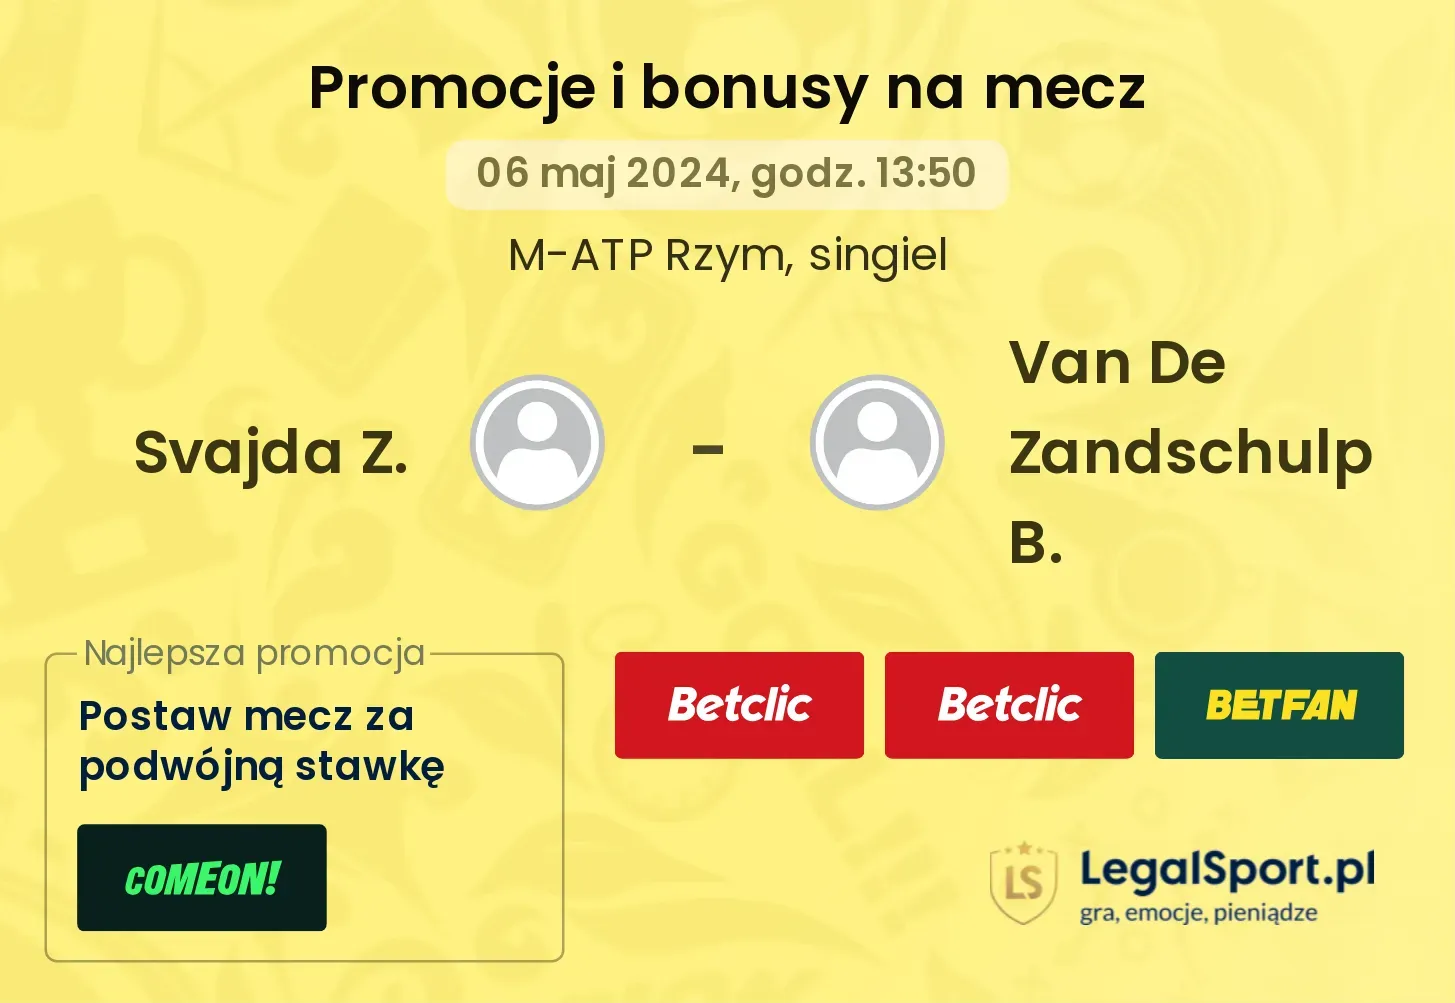 Svajda Z. - Van De Zandschulp B. promocje bonusy na mecz